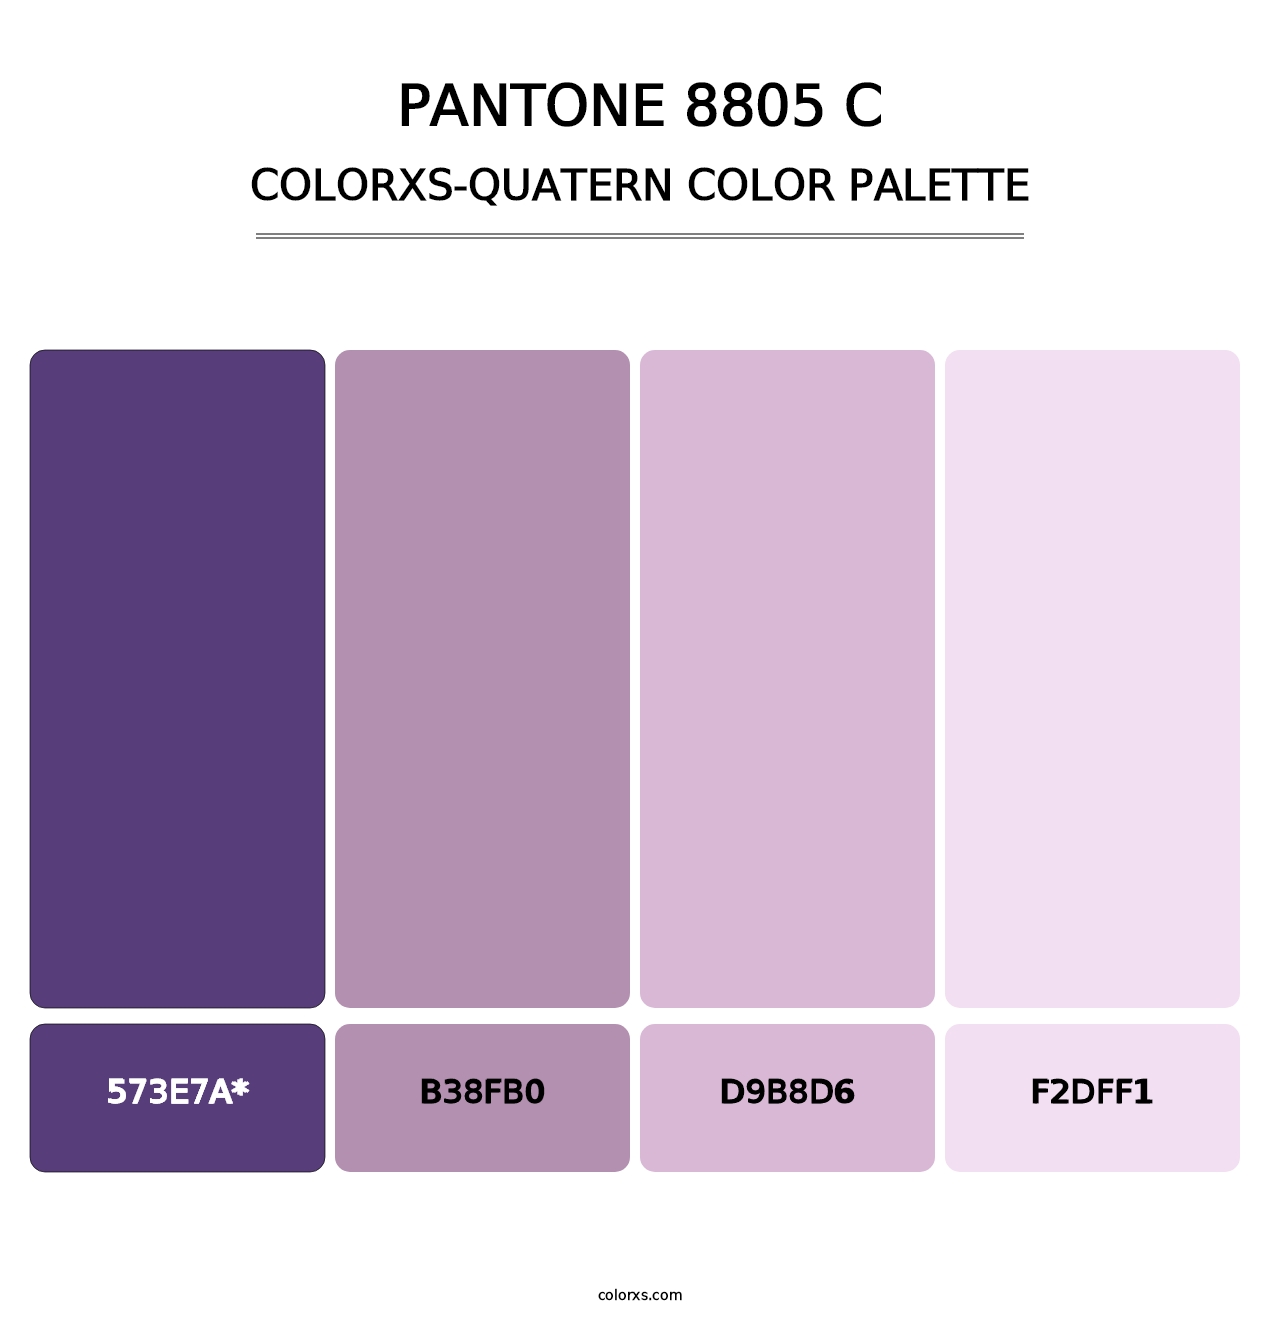 PANTONE 8805 C - Colorxs Quatern Palette